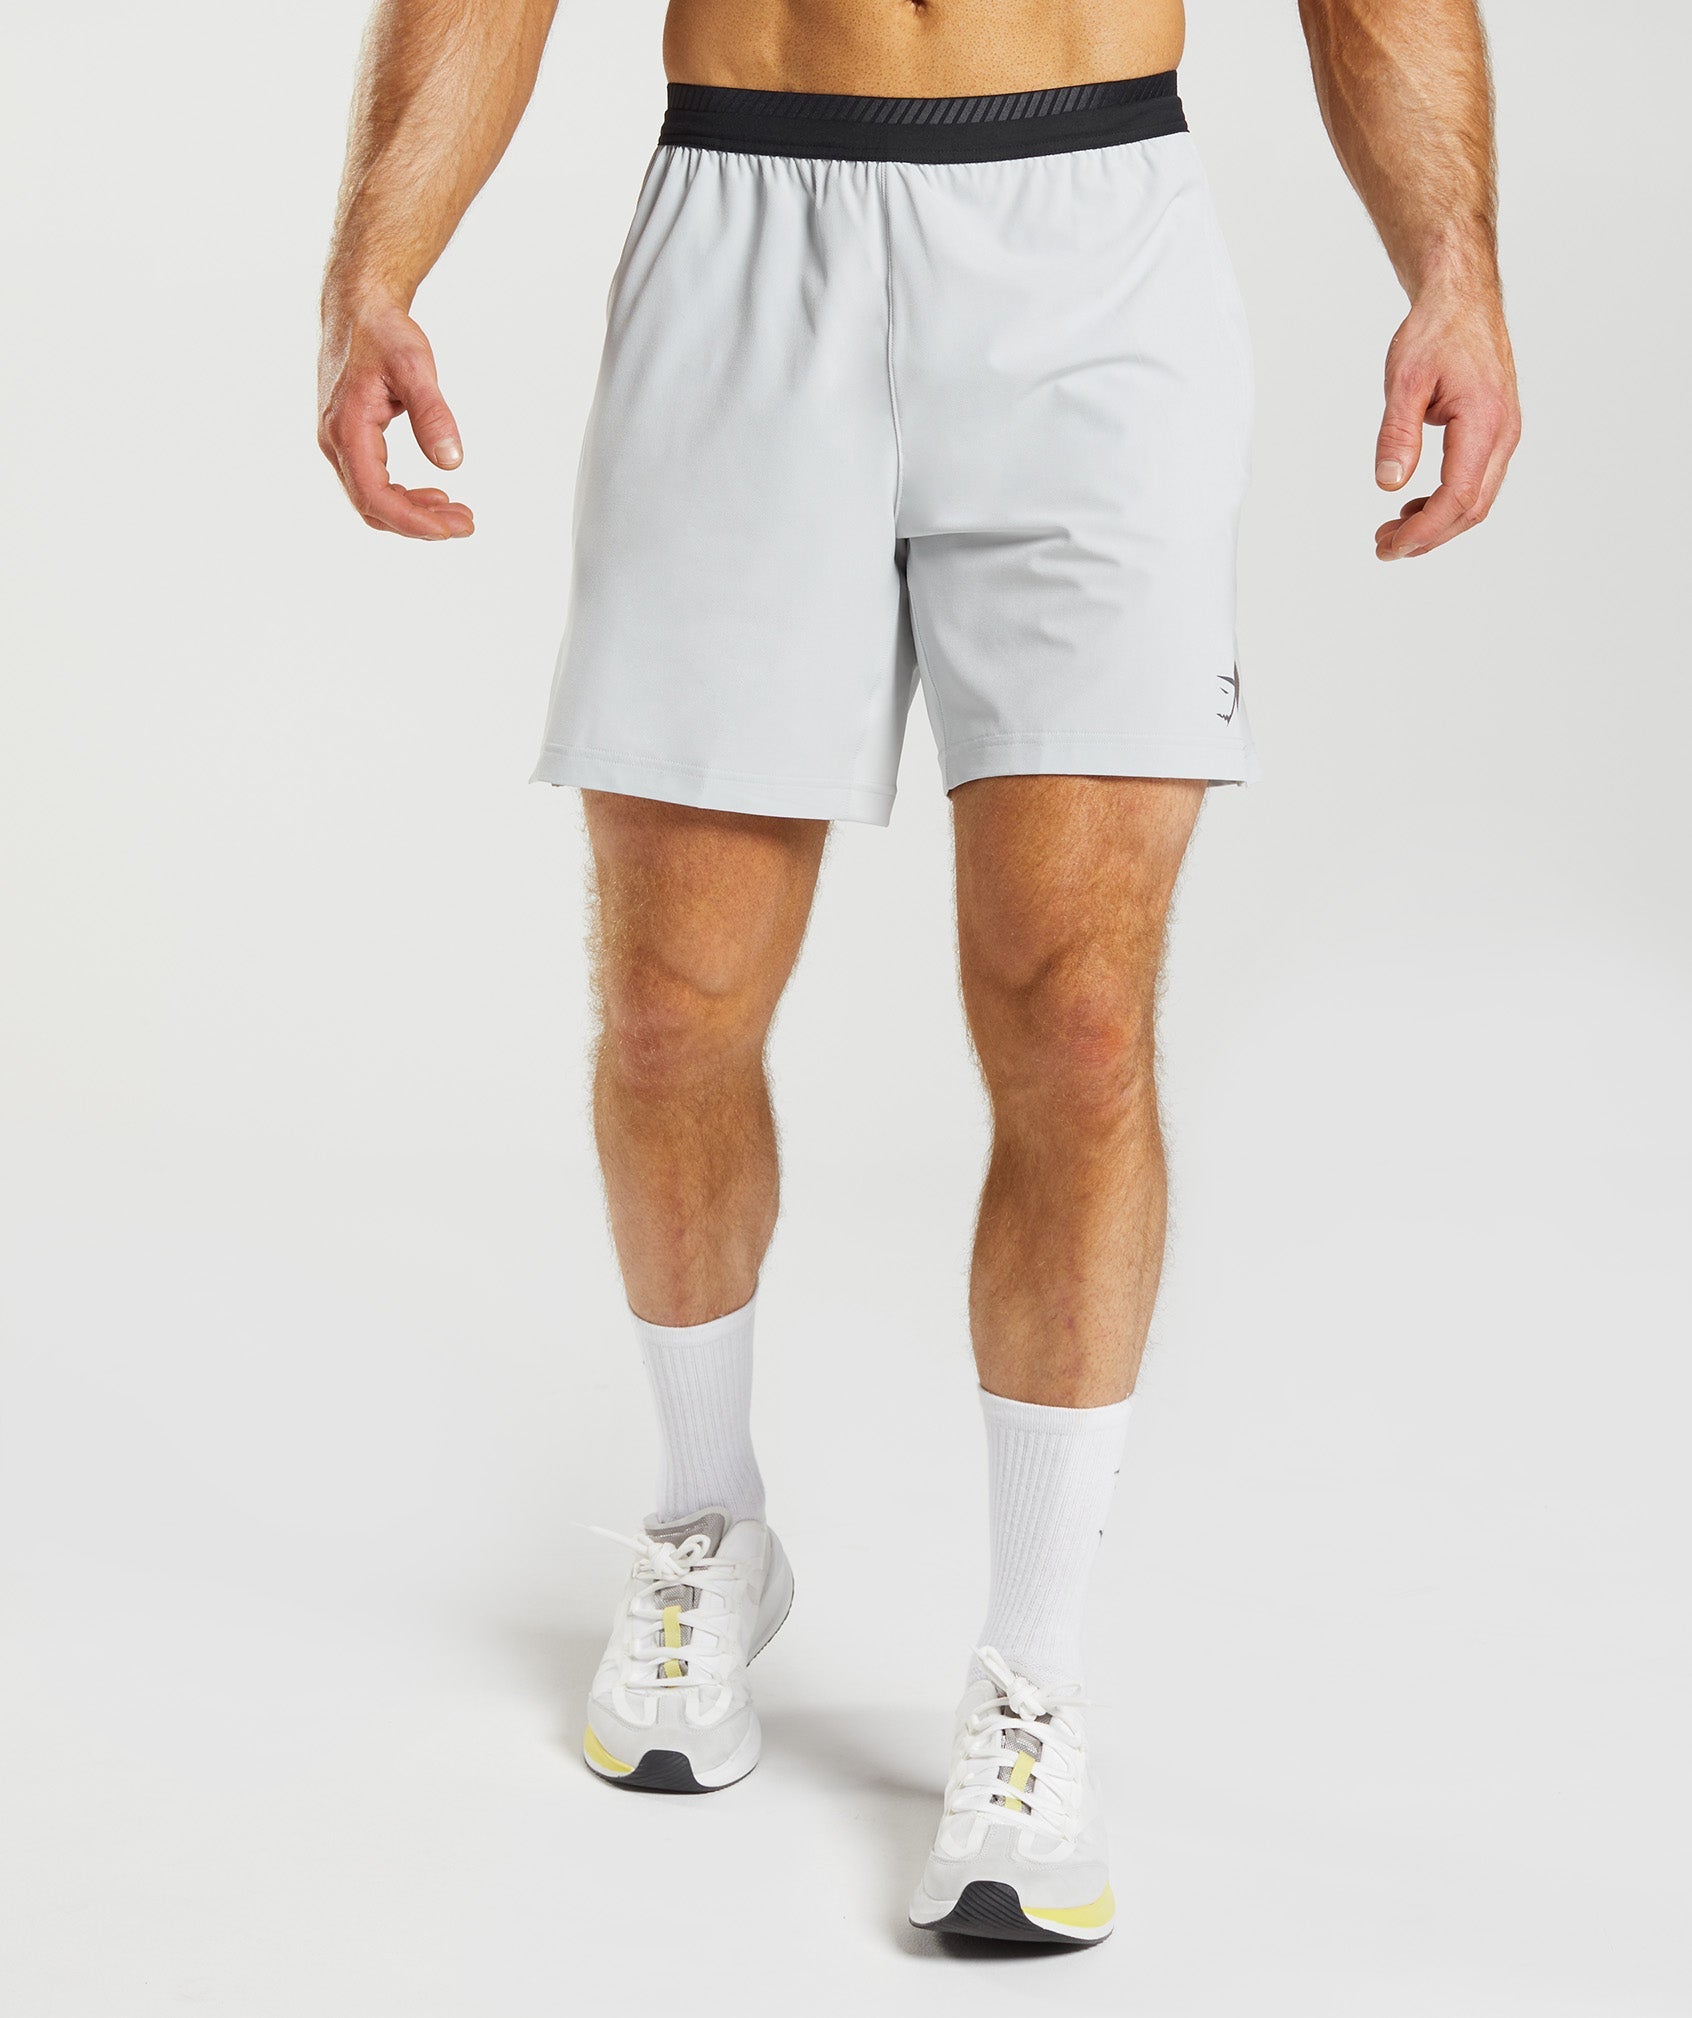 Gymshark arrival shorts 7 - Gem